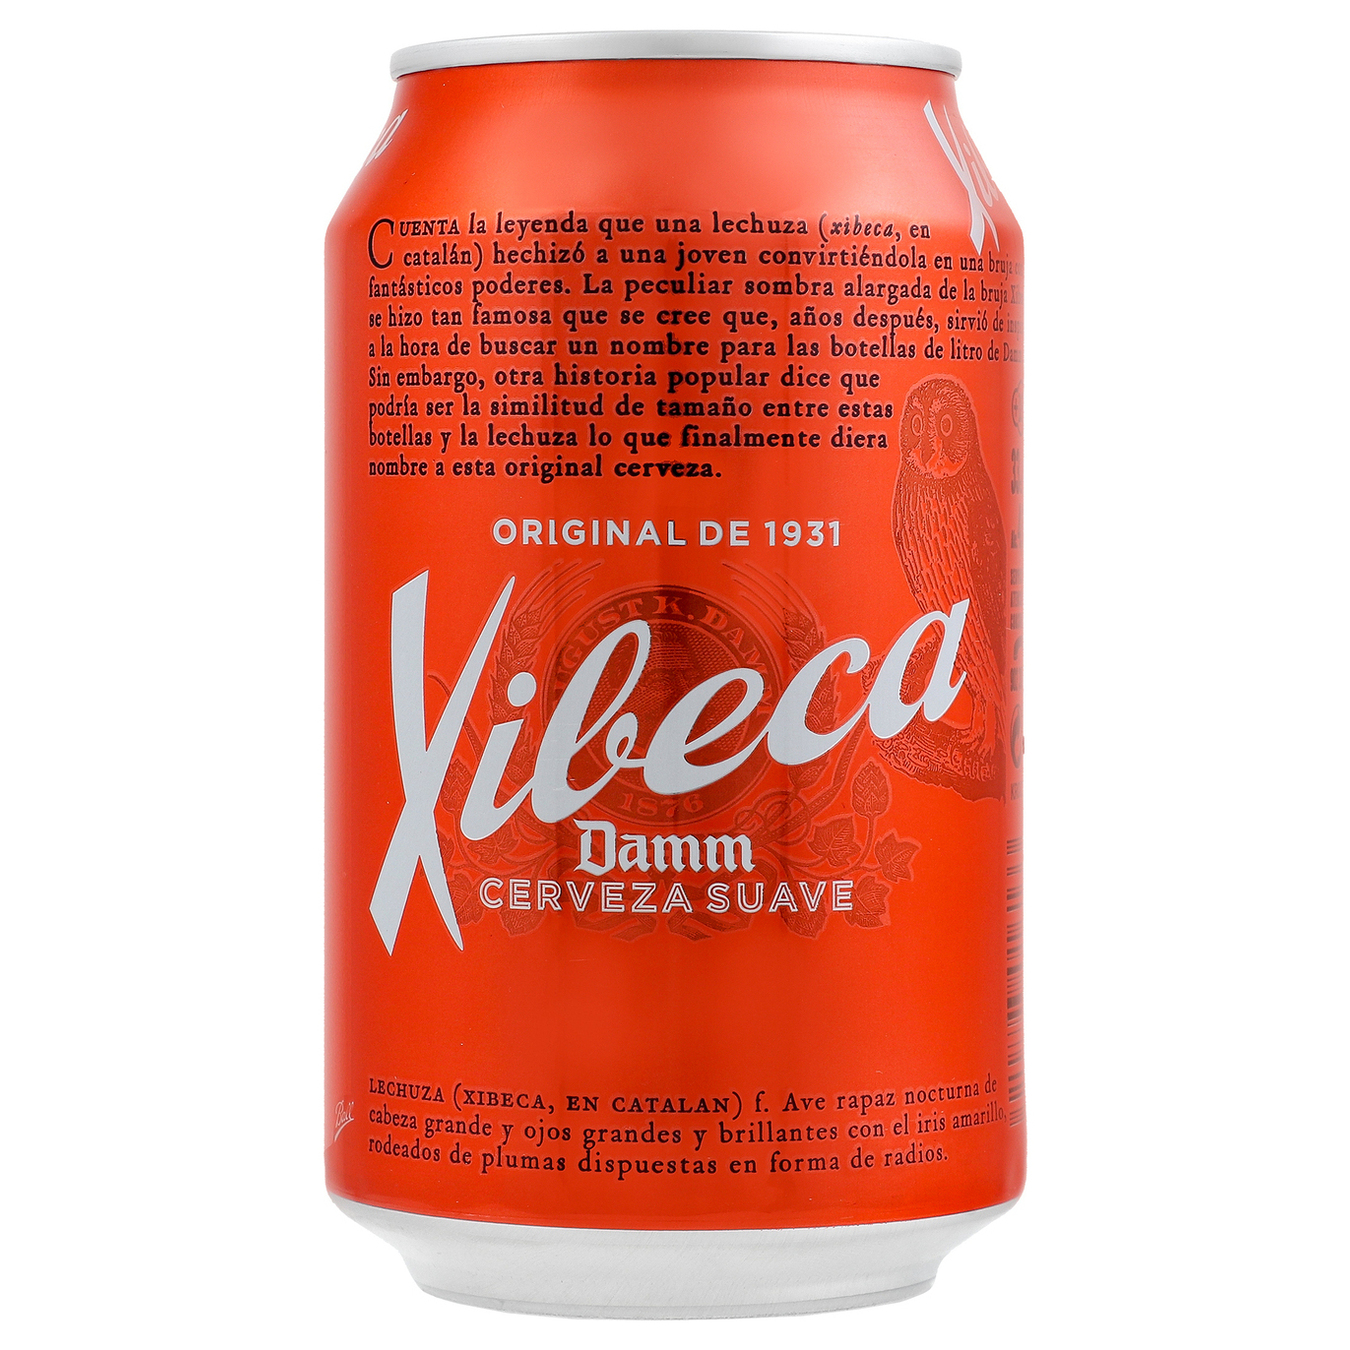 Xibeca Damm Cervesa Suau light filtered pasteurized Beer 4,6% 0,33l